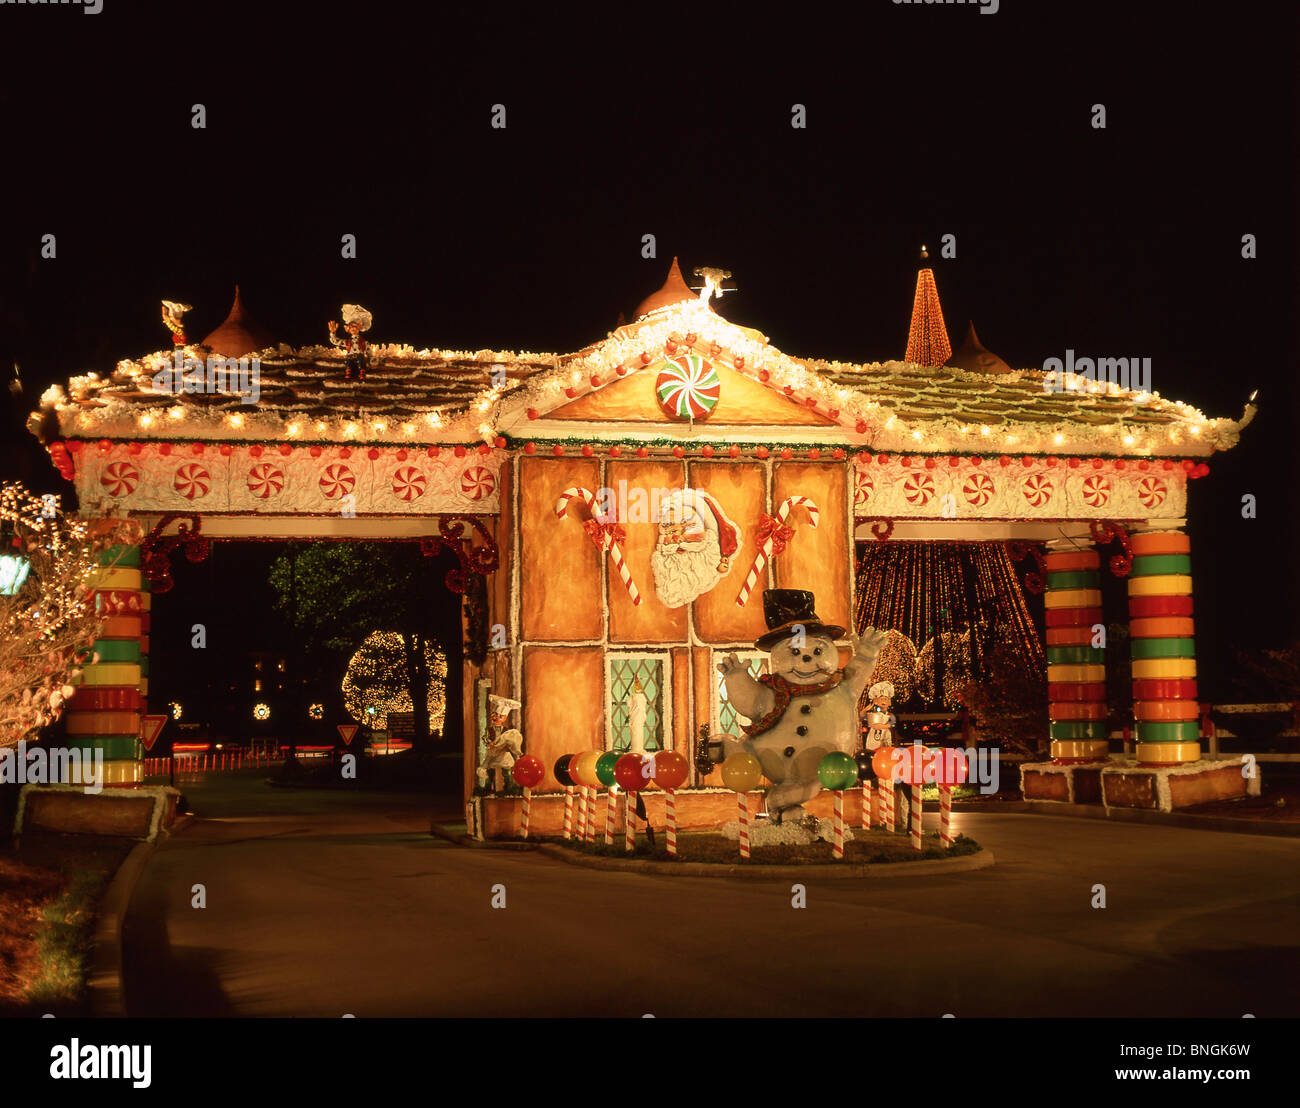 Le decorazioni di Natale all'entrata archway Opreyland Hotel, Music Valley, Nashville, Tennessee, Stati Uniti d'America Foto Stock